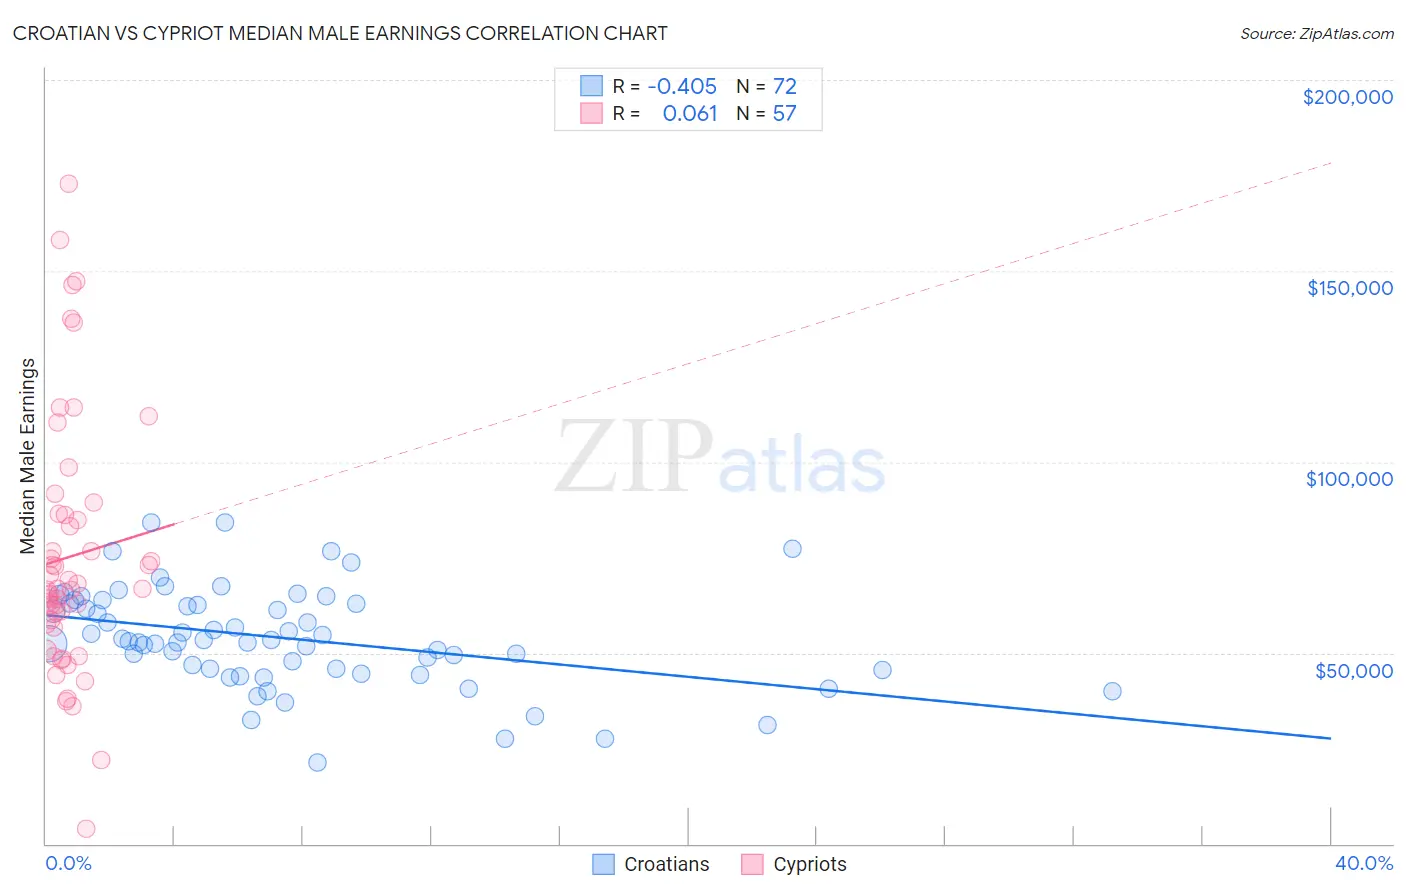 Croatian vs Cypriot Median Male Earnings